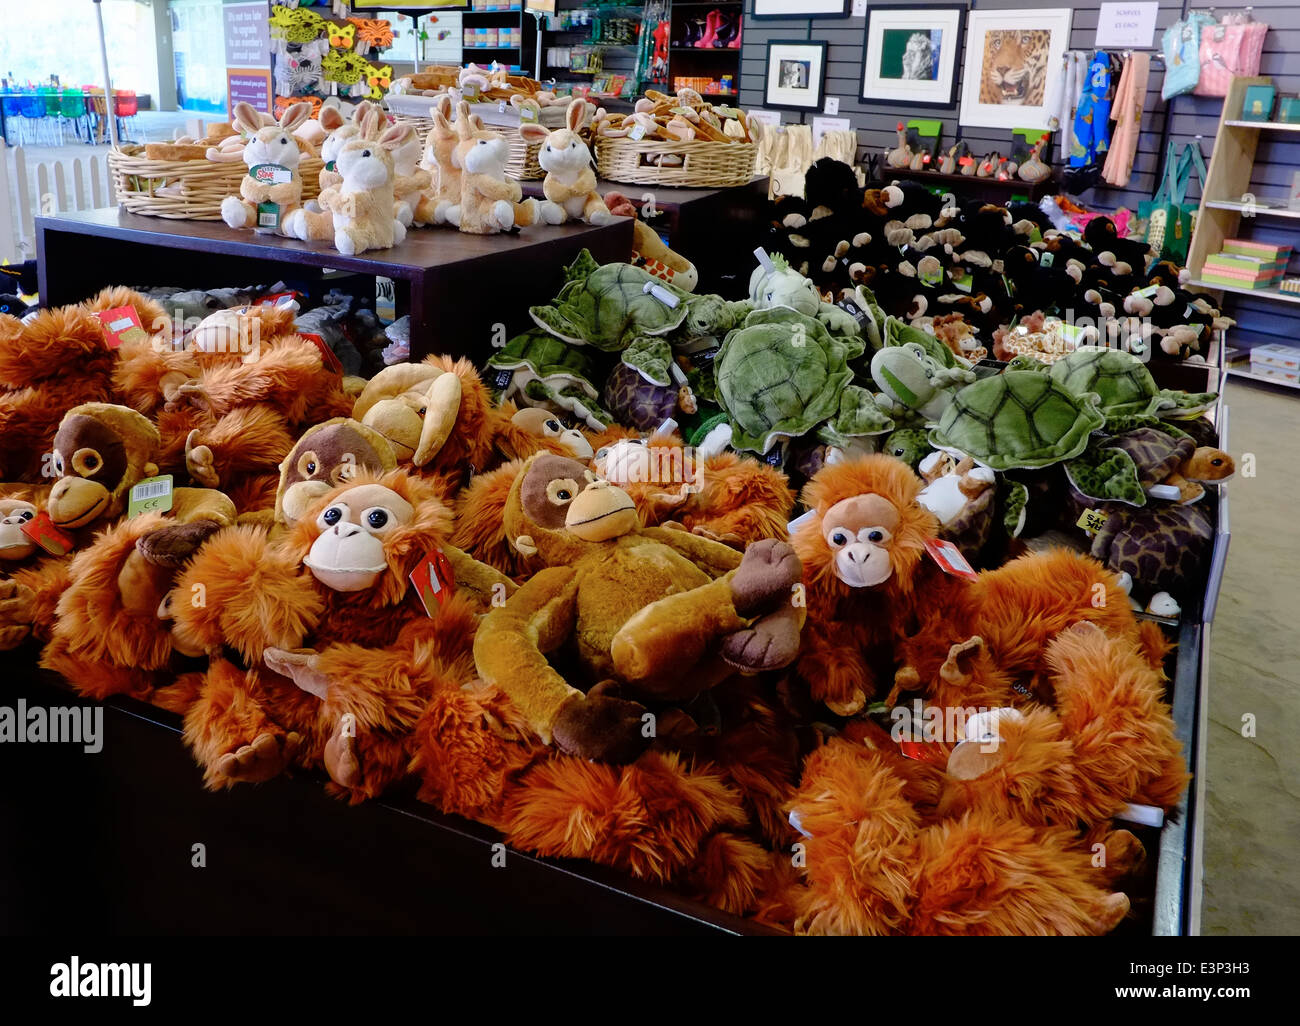 Les orangs-outans adorable en peluche empilées dans un zoo boutique de cadeaux. Le zoo de Twycross England UK Banque D'Images